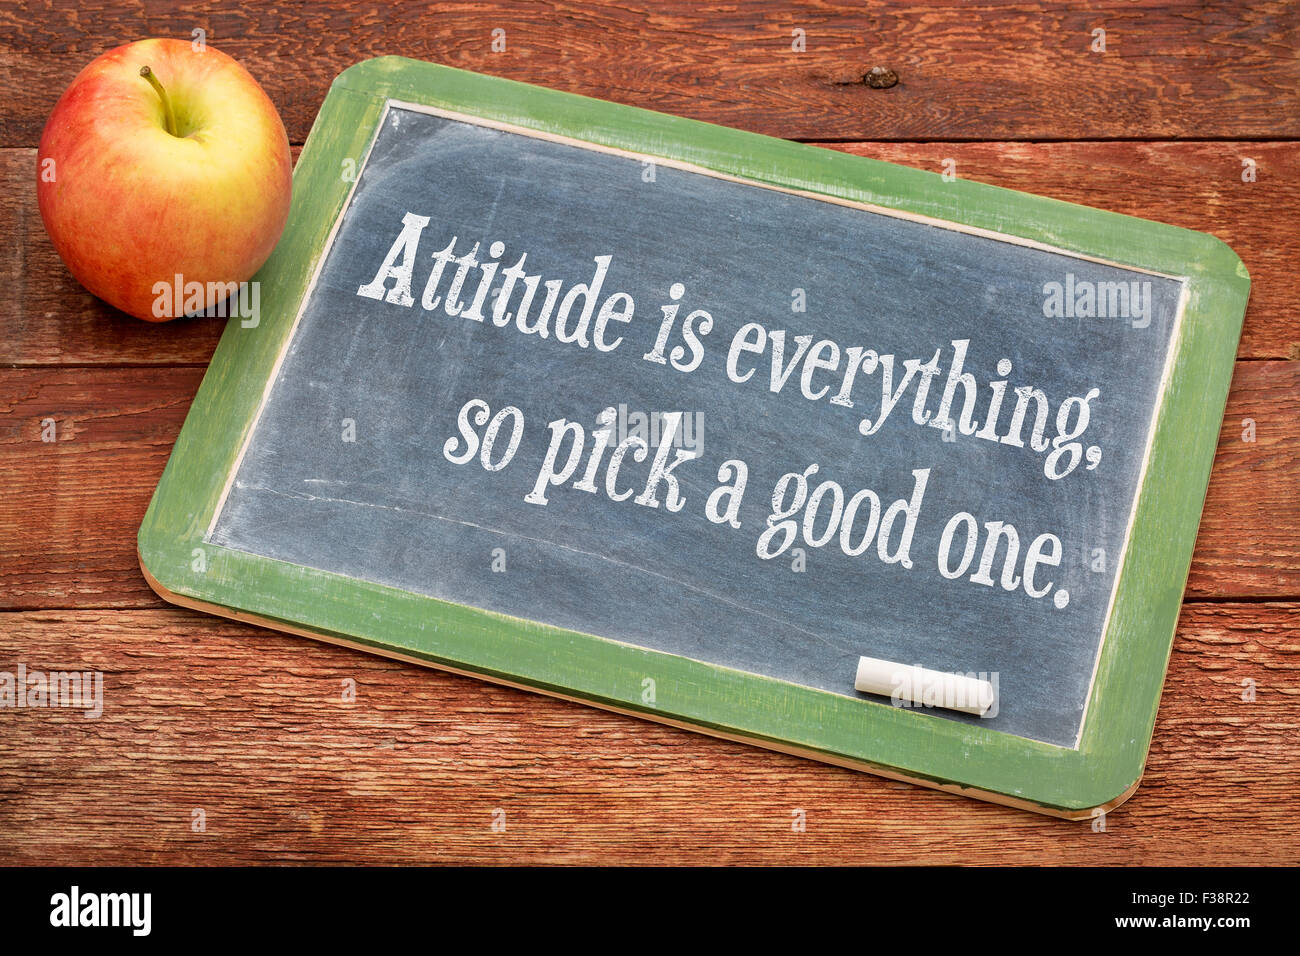 Haltung ist alles, so wählen Sie eine gute - positiv motivierenden Worte auf einer Schiefertafel Tafel gegen rote Scheune Holz Stockfoto